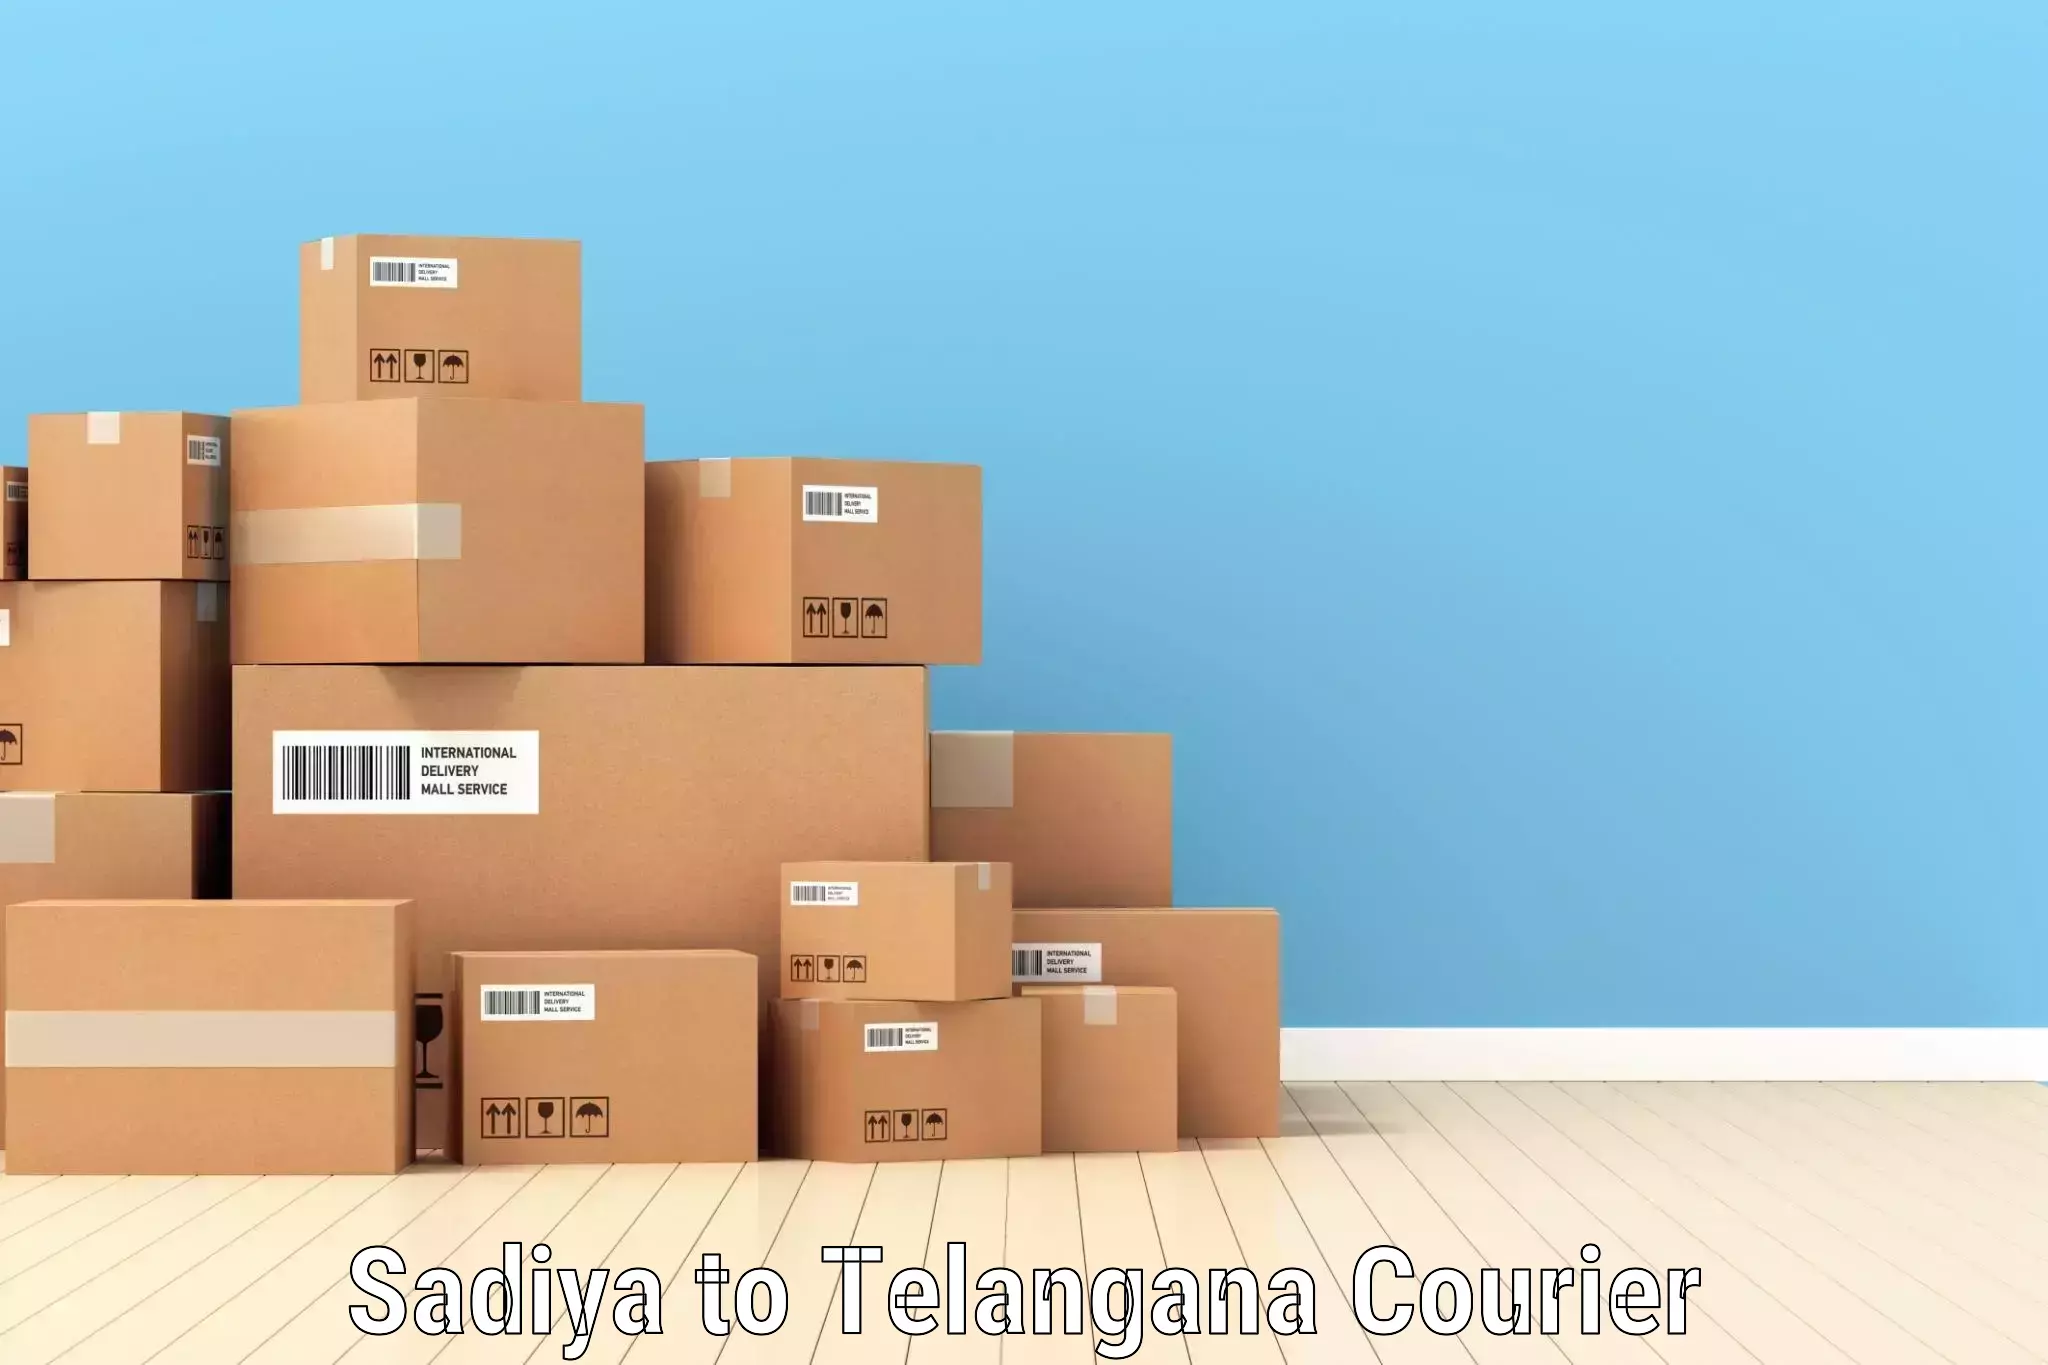 Customized shipping options Sadiya to Yellareddy